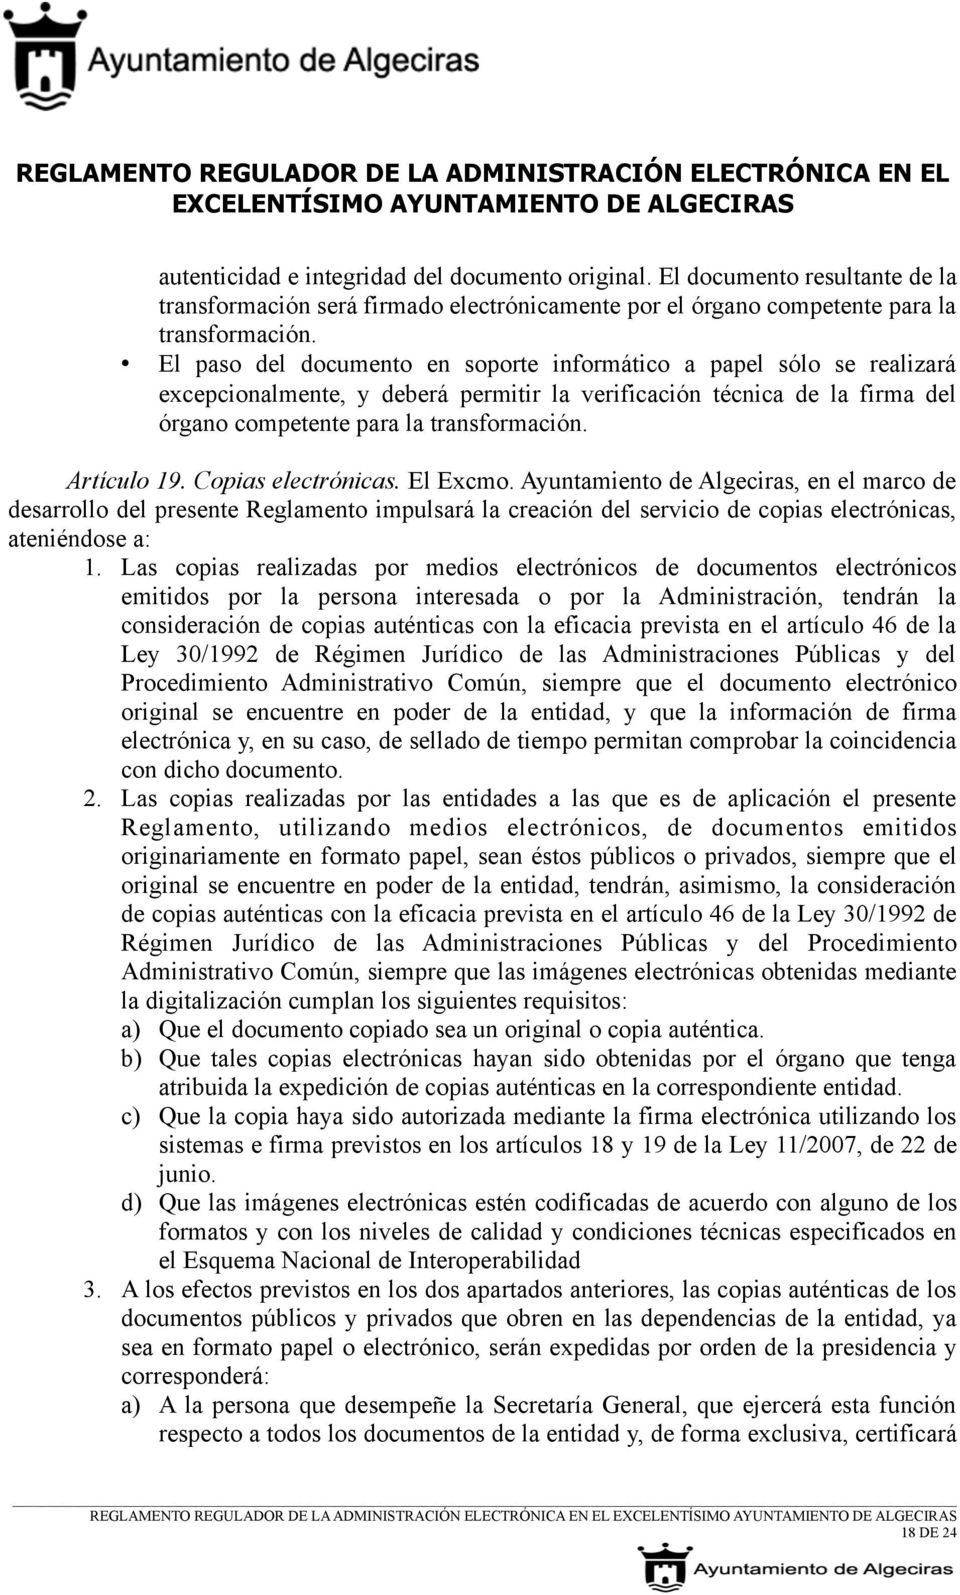 Artículo 19. Copias electrónicas. El Excmo. Ayuntamiento de Algeciras, en el marco de desarrollo del presente Reglamento impulsará la creación del servicio de copias electrónicas, ateniéndose a: 1.